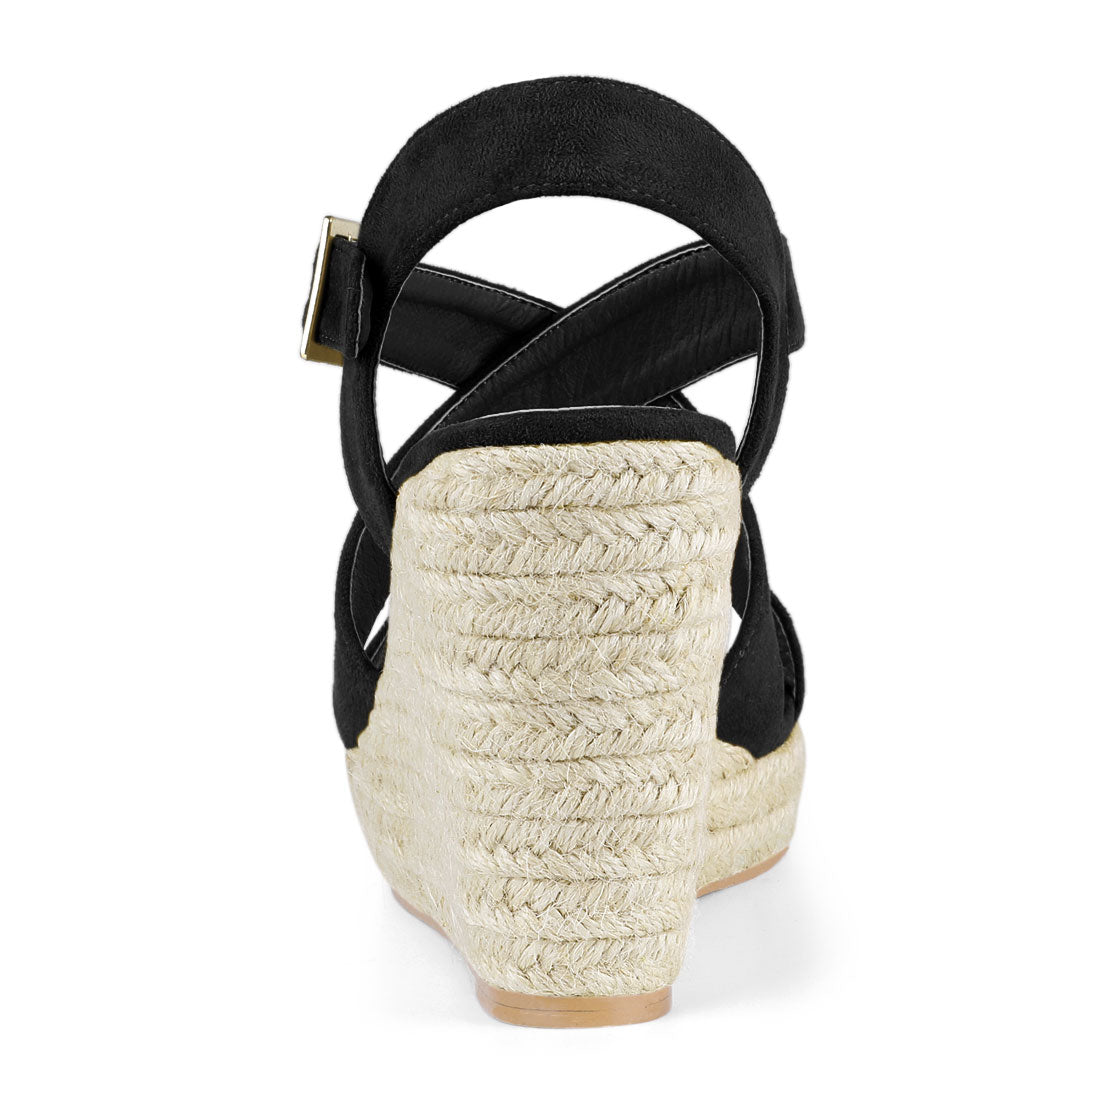 Allegra K Espadrilles Platform Slingback Wedges Sandals